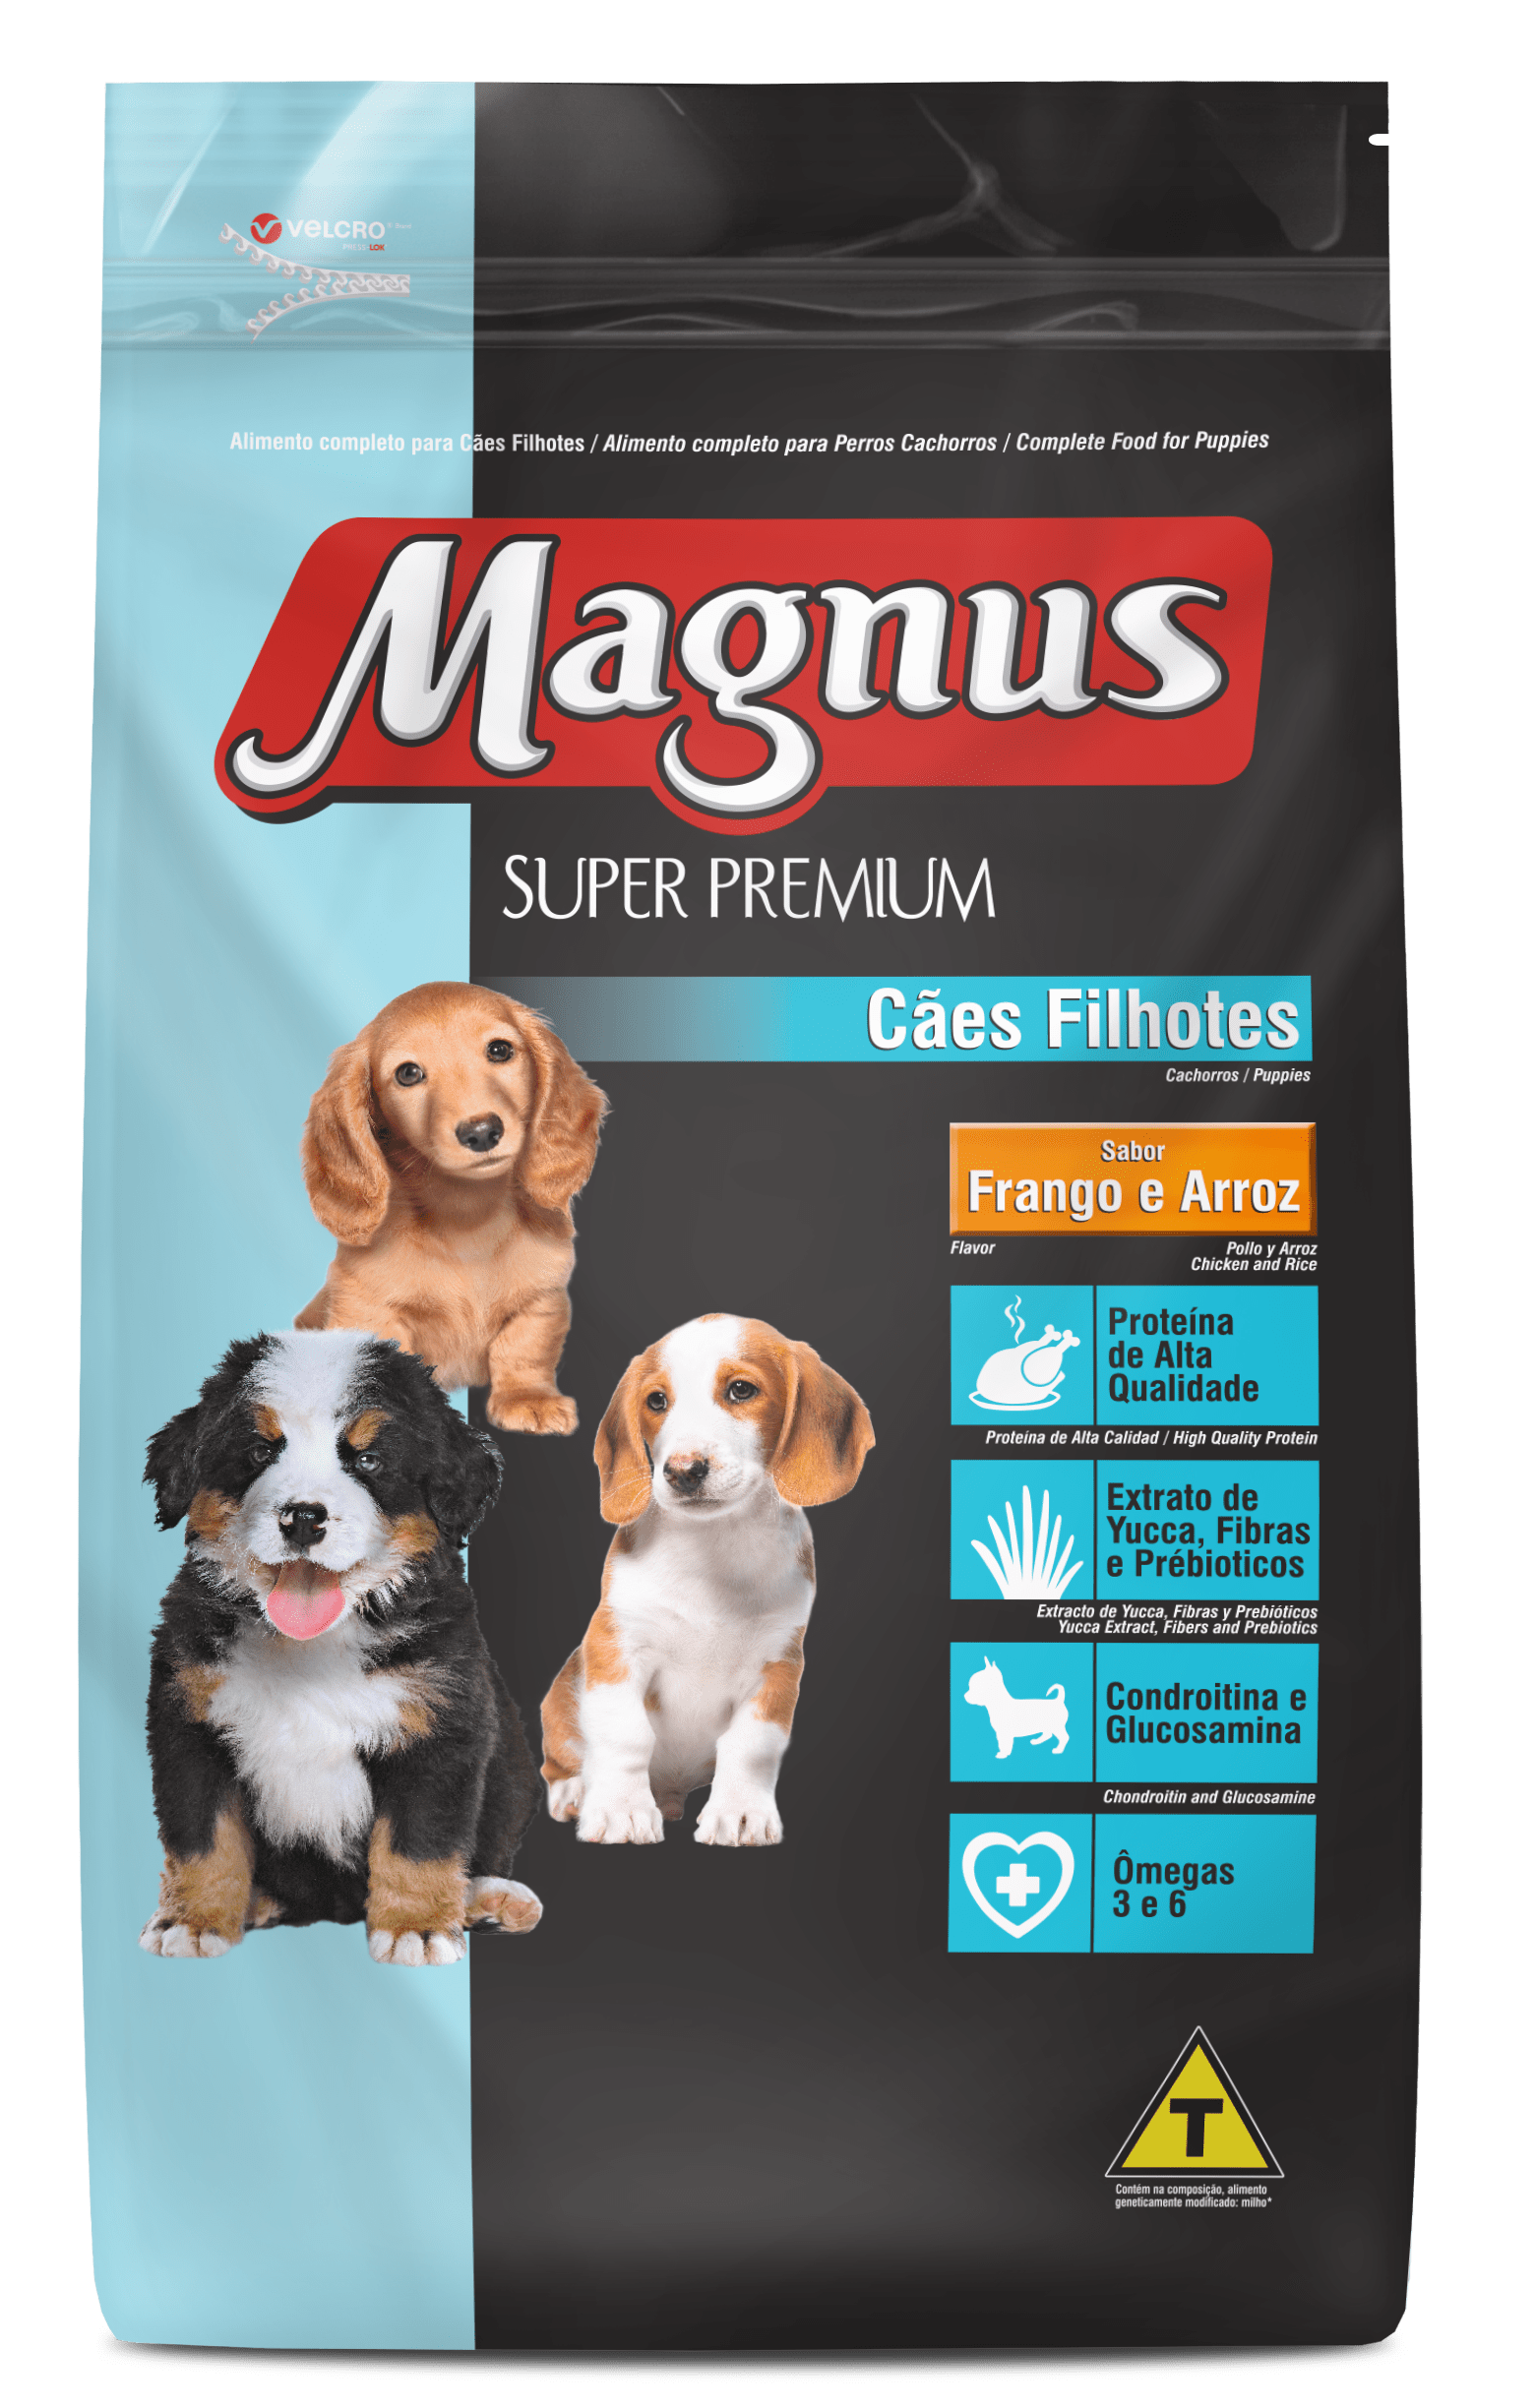 Magnus Super Premium Puppies Chicken and Rice Flavor